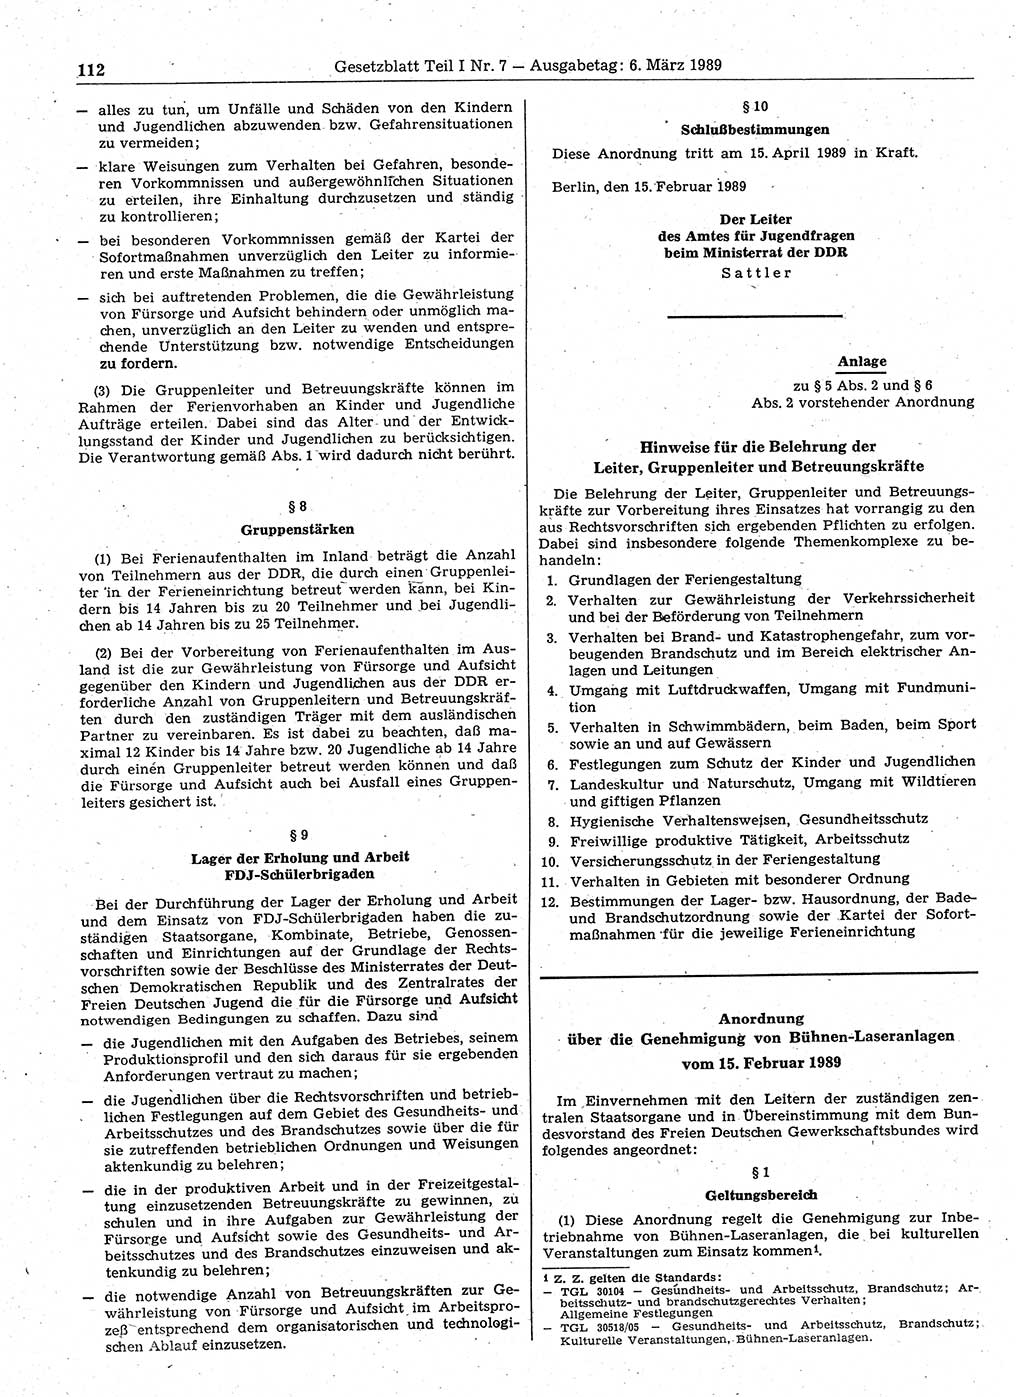 Gesetzblatt (GBl.) der Deutschen Demokratischen Republik (DDR) Teil Ⅰ 1989, Seite 112 (GBl. DDR Ⅰ 1989, S. 112)